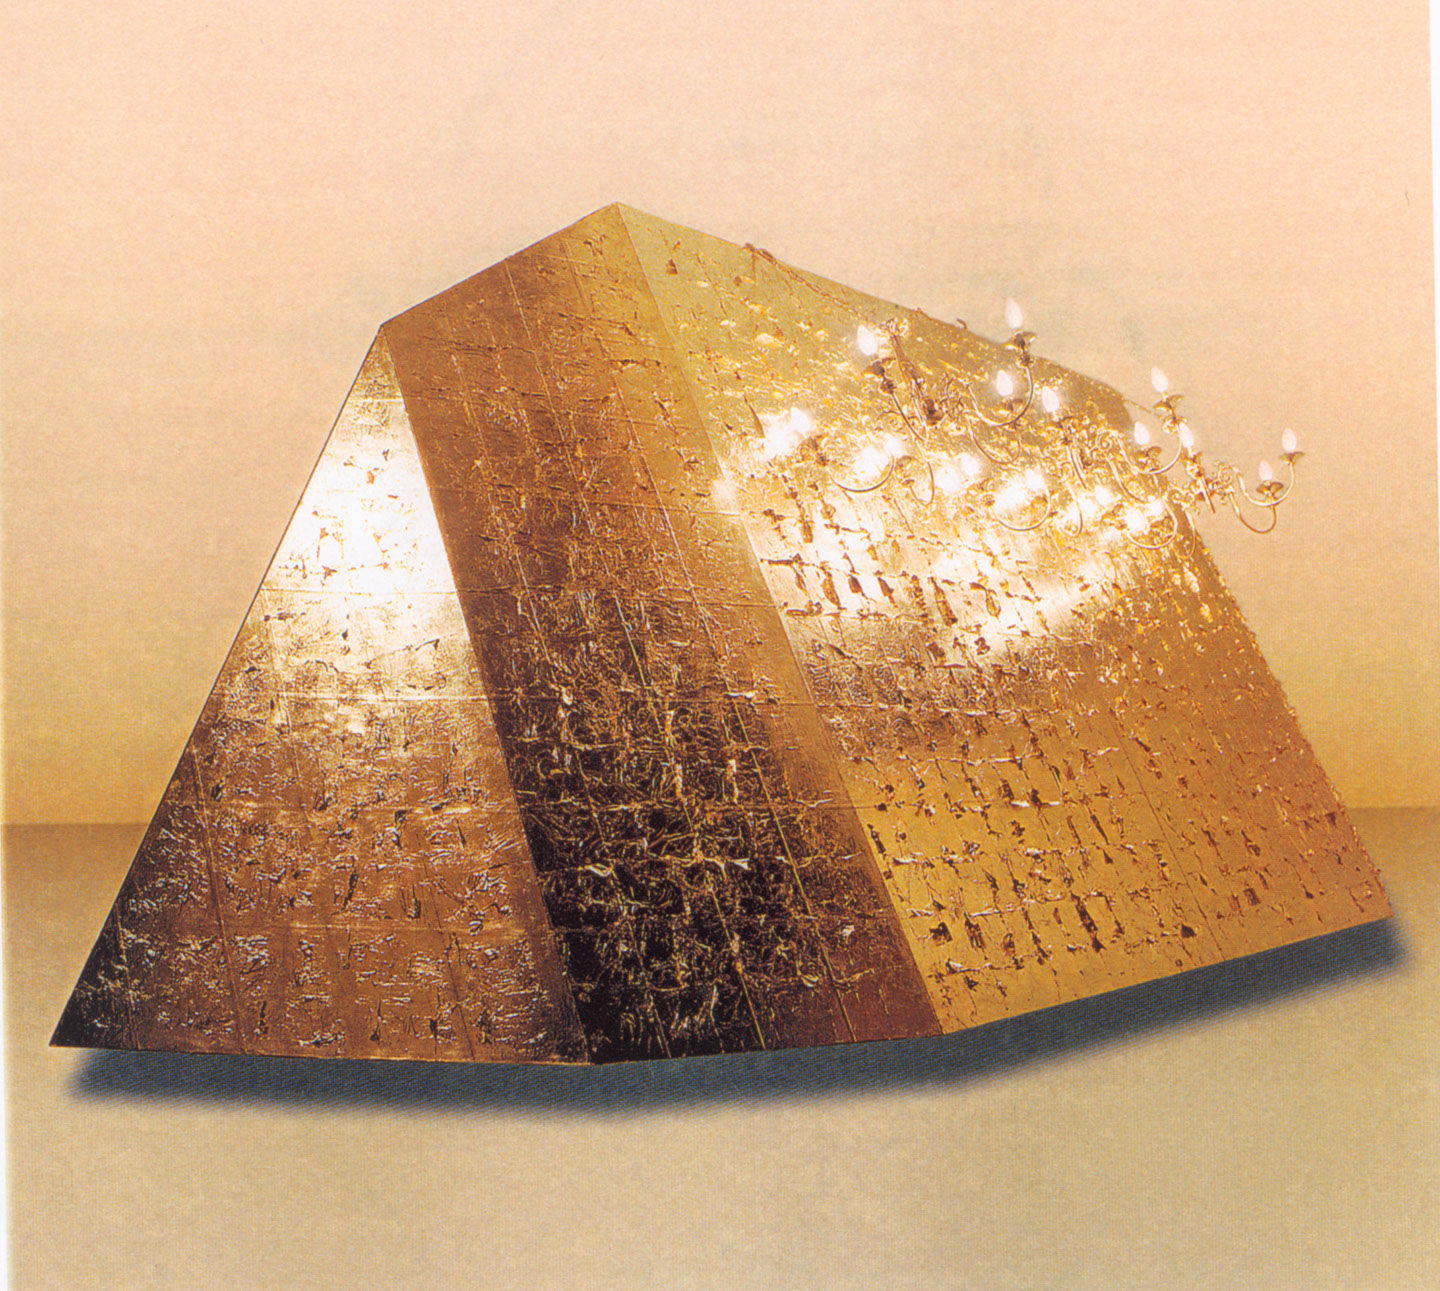 Τιτλος: Το Βουνό 2
Υλικά: Ξύλινη κατασκευή, Φύλλο χρυσού, Πολυέλαιοι
Μέγεθος: 240x600x240 cm
Έτος: 1998